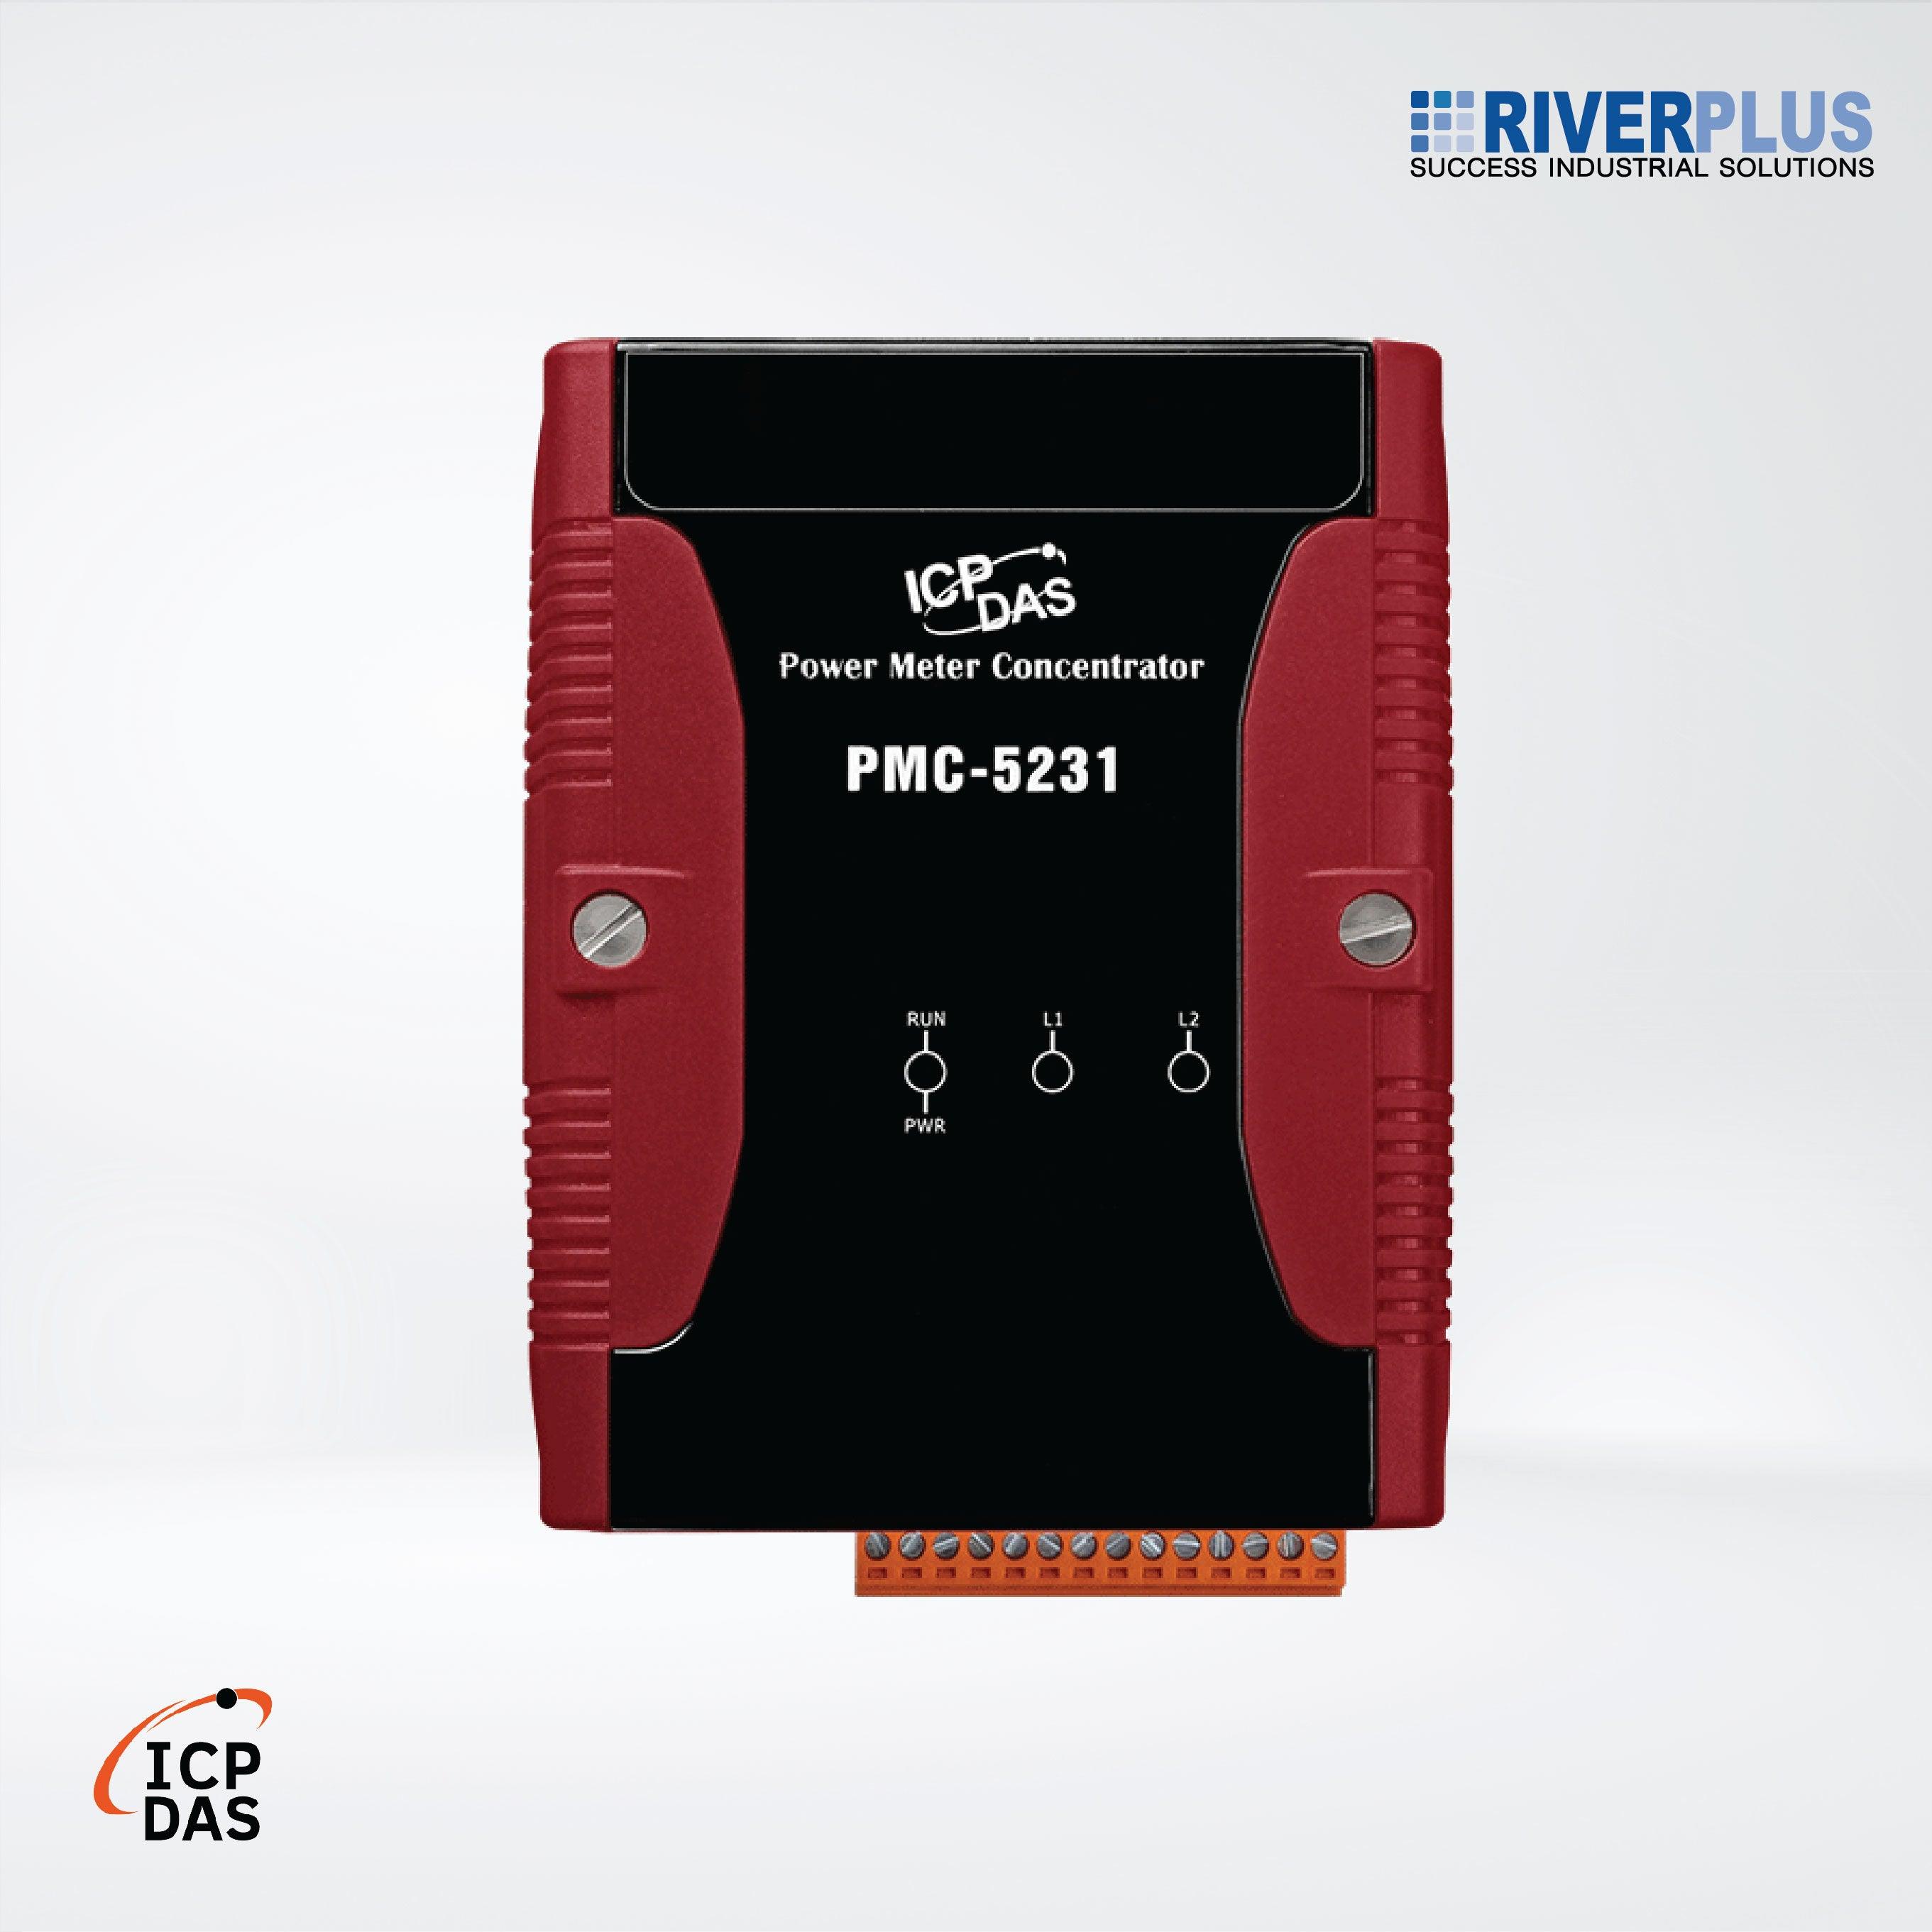 PMC-5231 IIoT Power Meter Concentrator - Riverplus